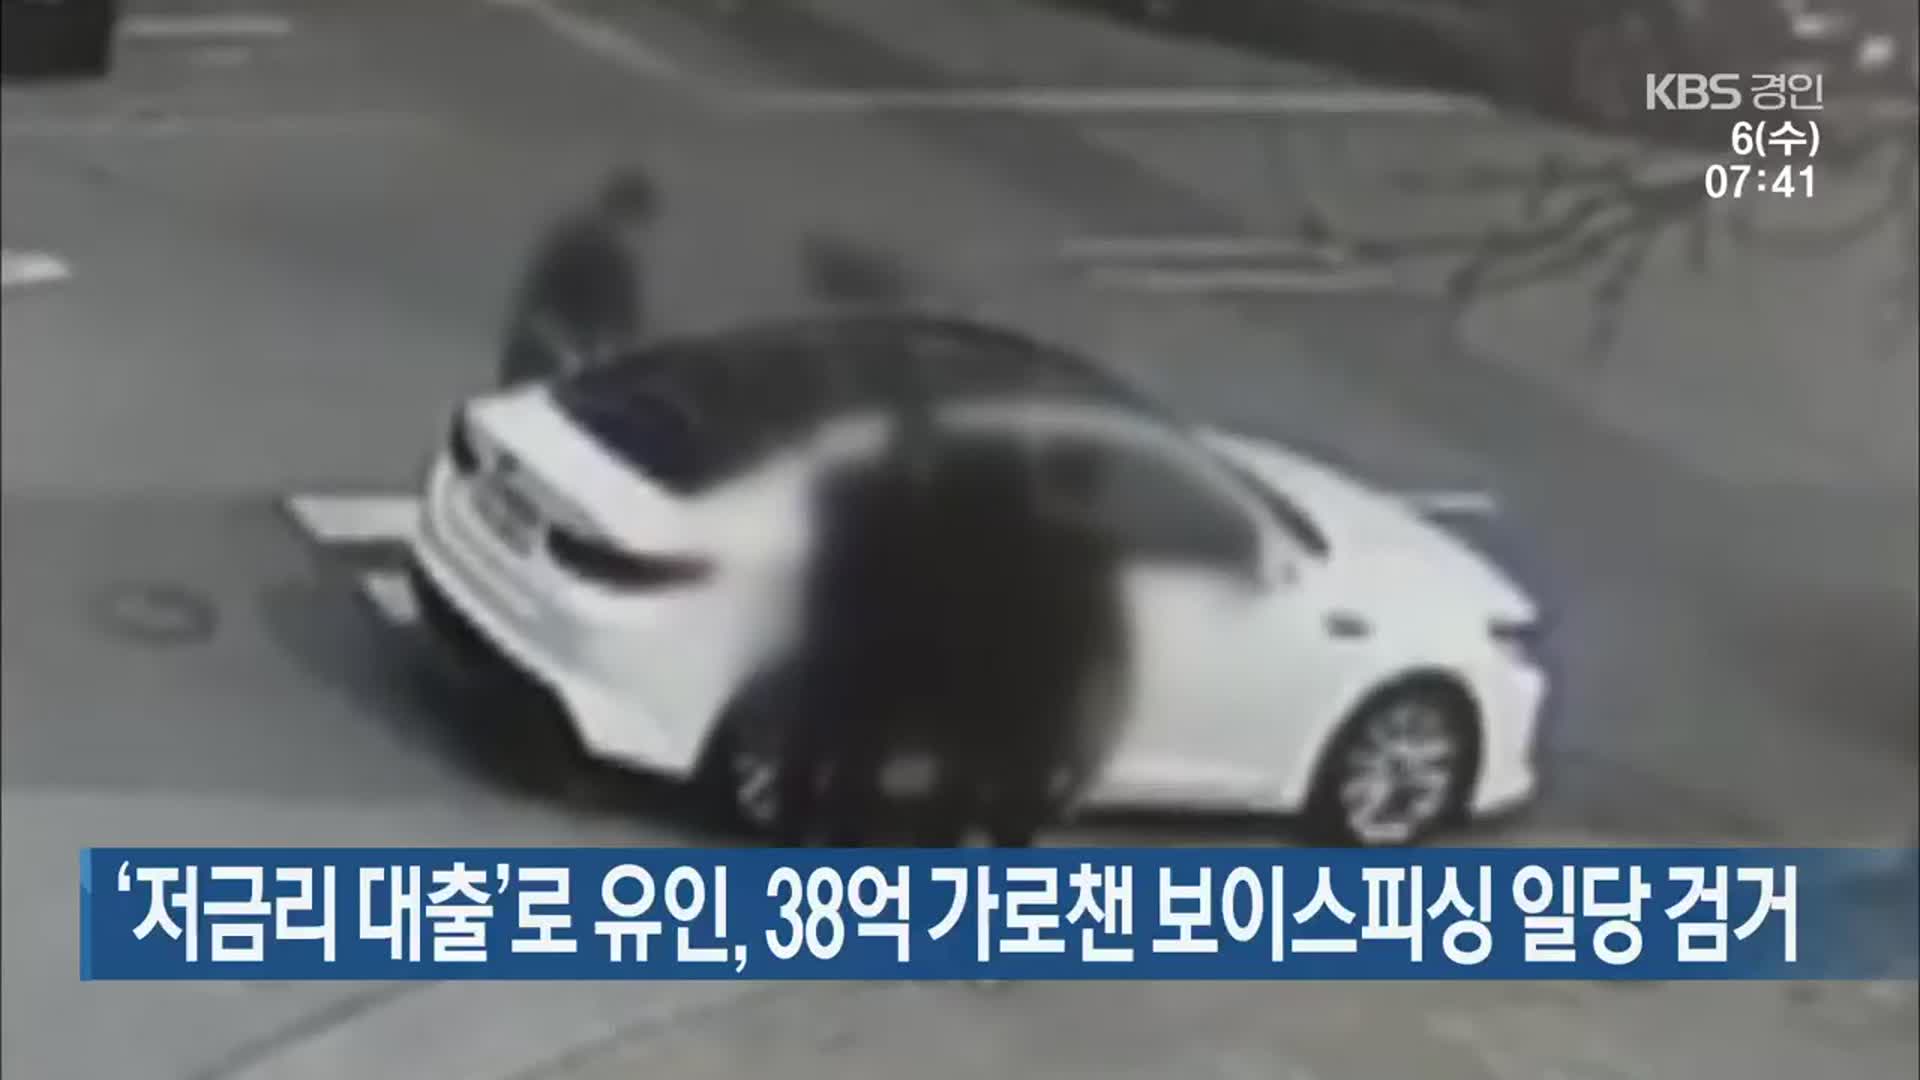 ‘저금리 대출’로 유인, 38억 가로챈 보이스피싱 일당 검거